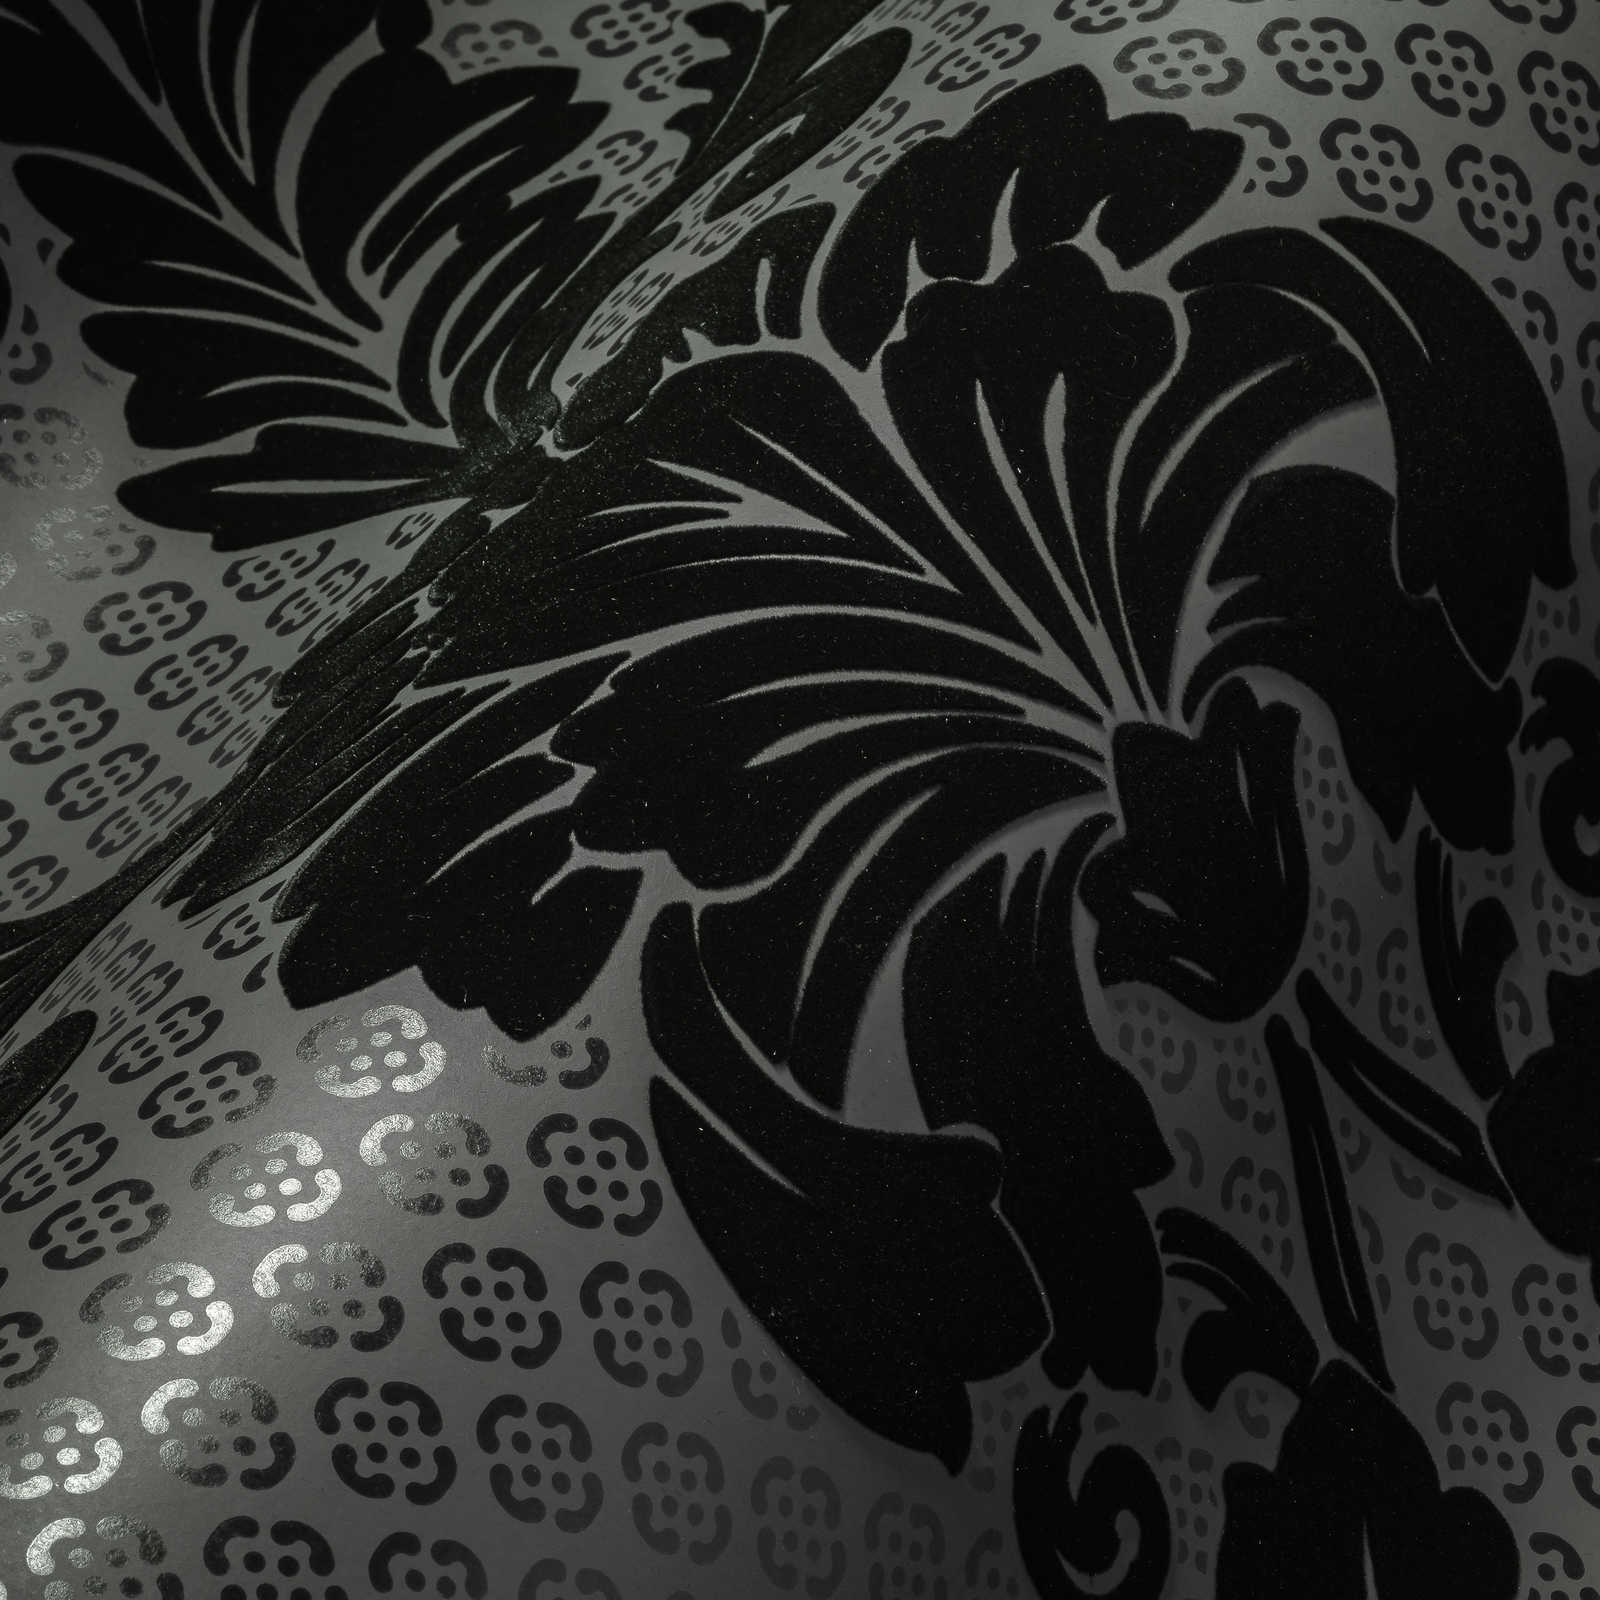             Papel pintado ornamental con grandes motivos florales - negro, gris
        